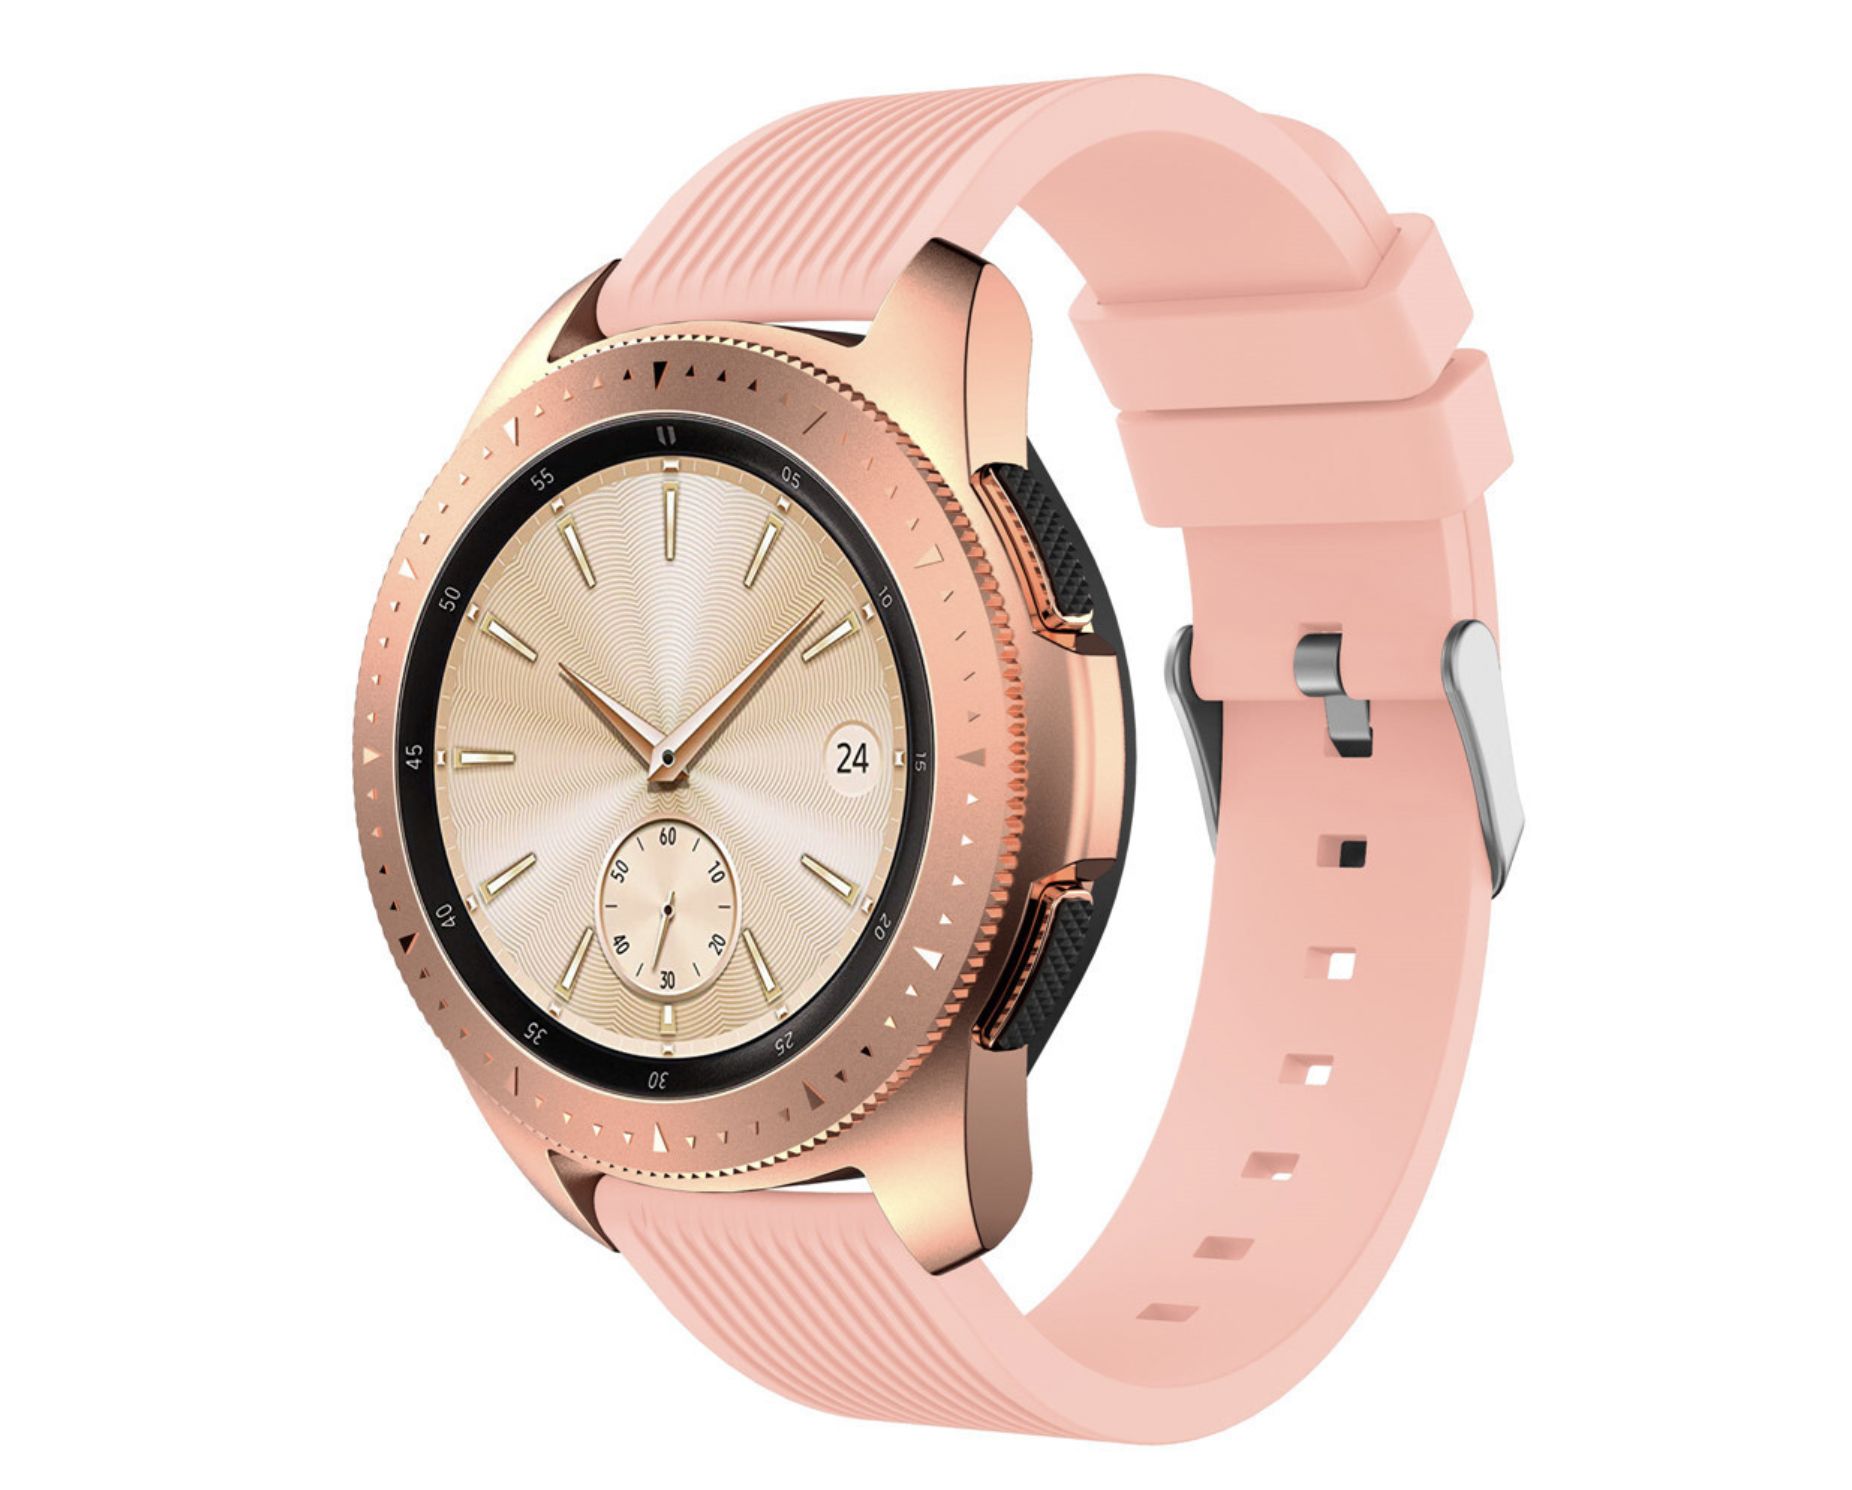 Samsung watch розовые